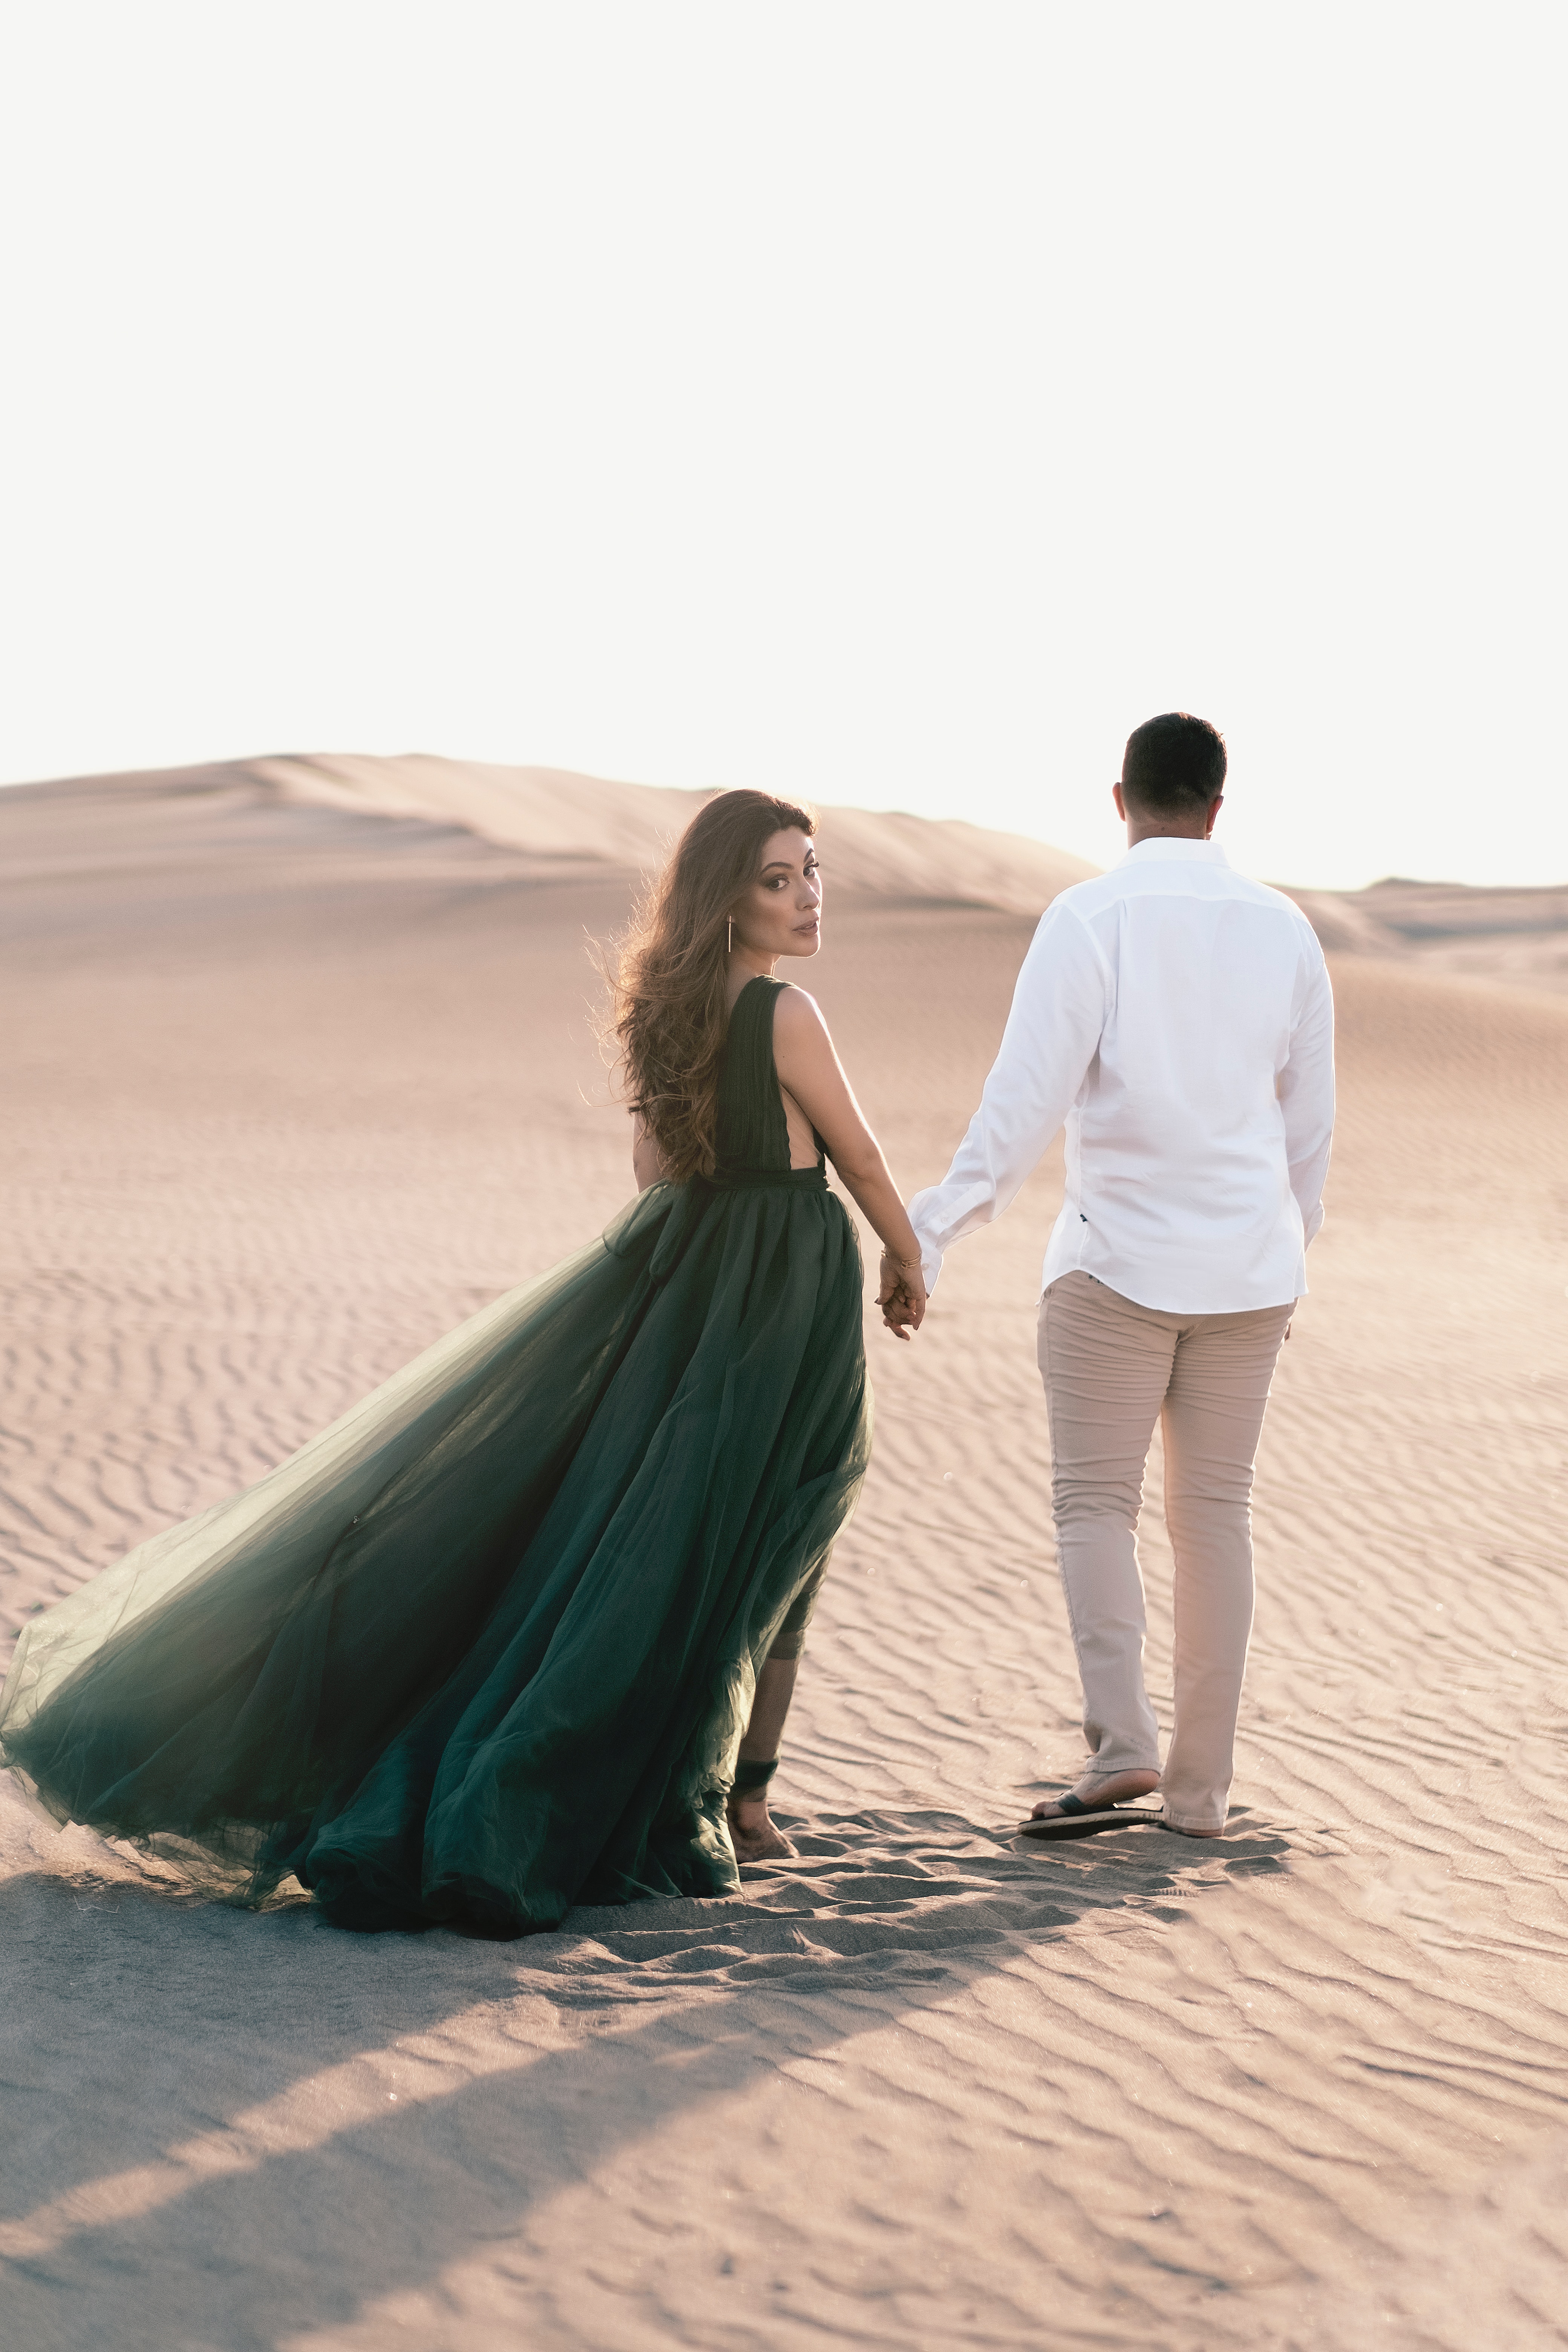 Couple walking in a desert | Source: Unsplash